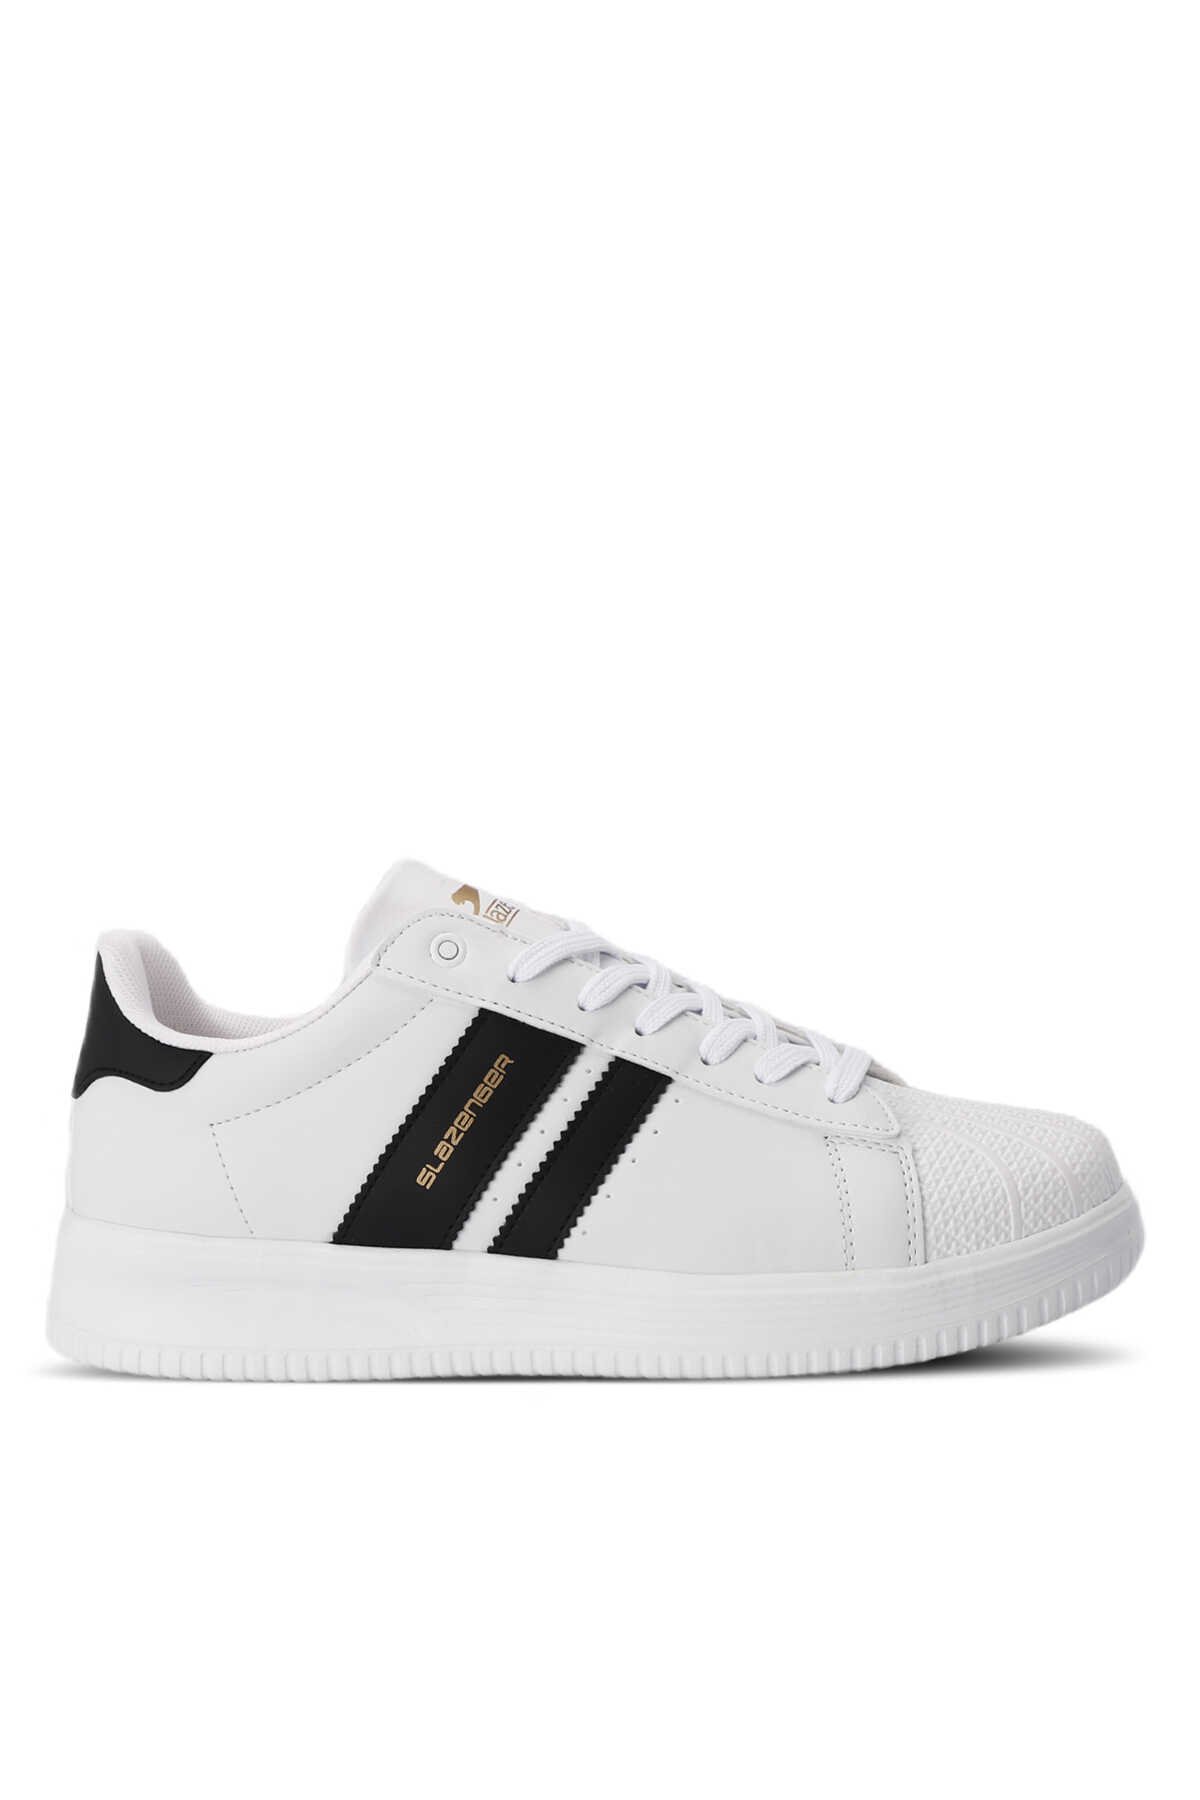 Slazenger - ZENO Sneaker Erkek Ayakkabı Beyaz / Siyah